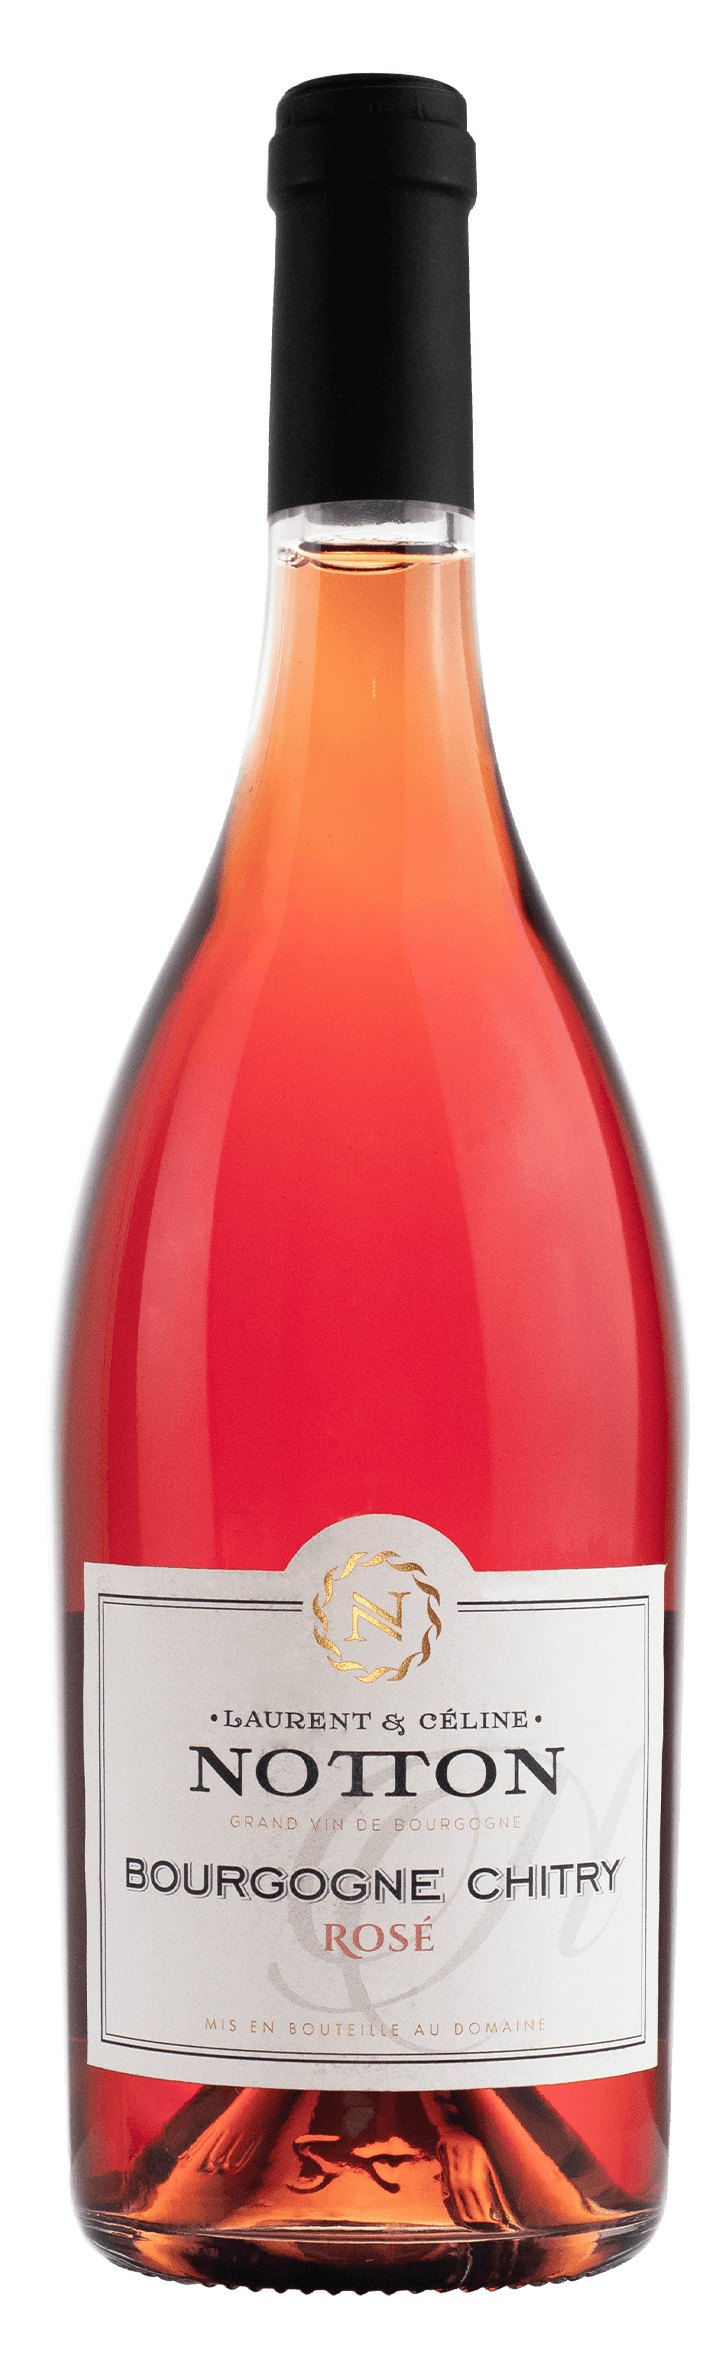 bottle NOTTON Bourgogne Chitry Rose 2018